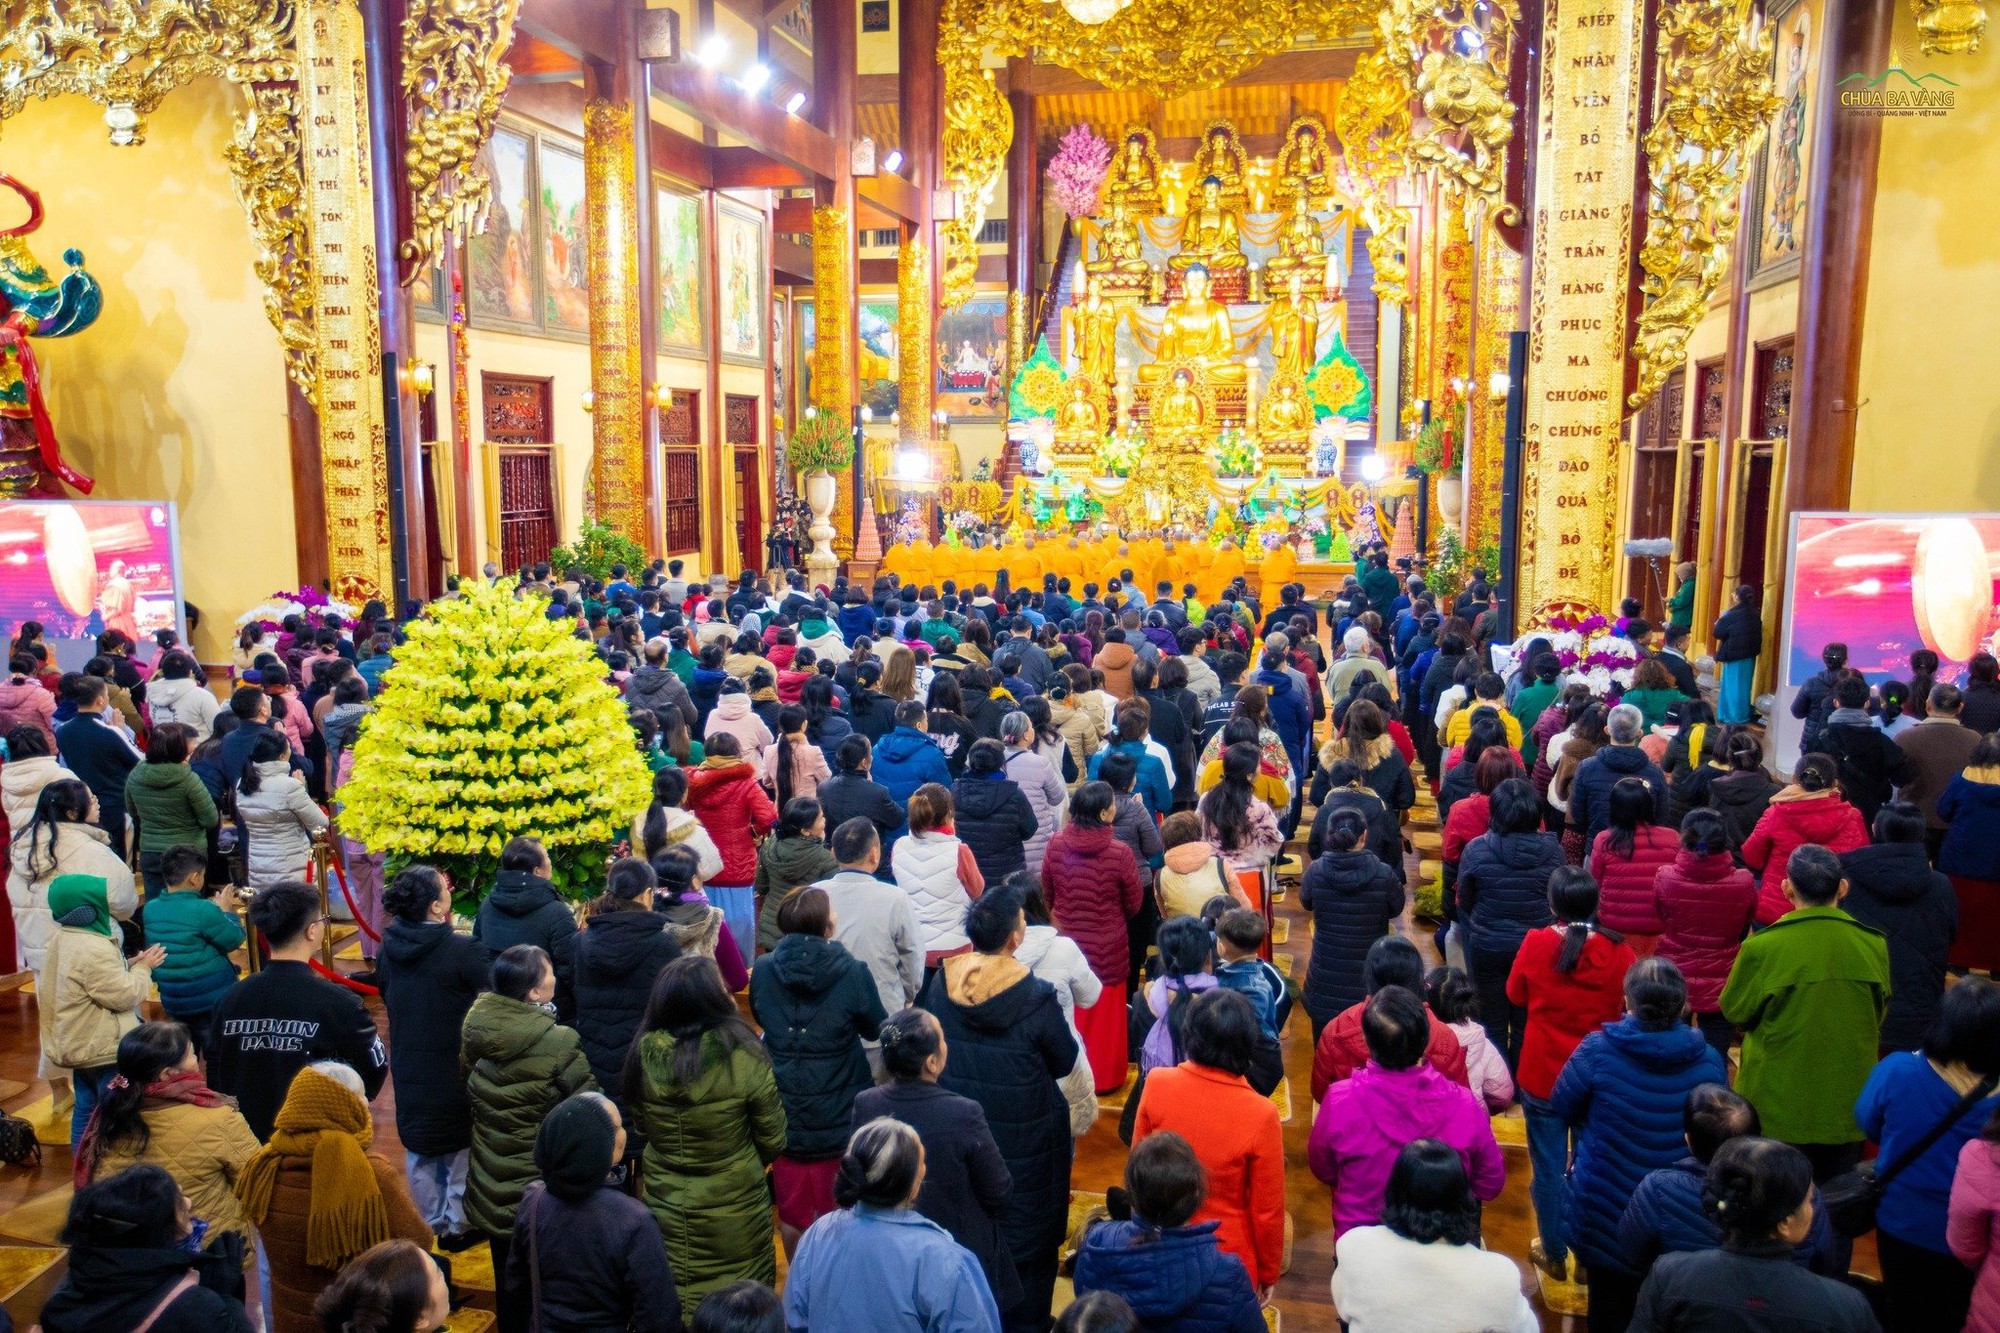 Giám sát việc tổ chức lễ hội dịp Tết Nguyên đán tại chùa Ba Vàng- Ảnh 1.